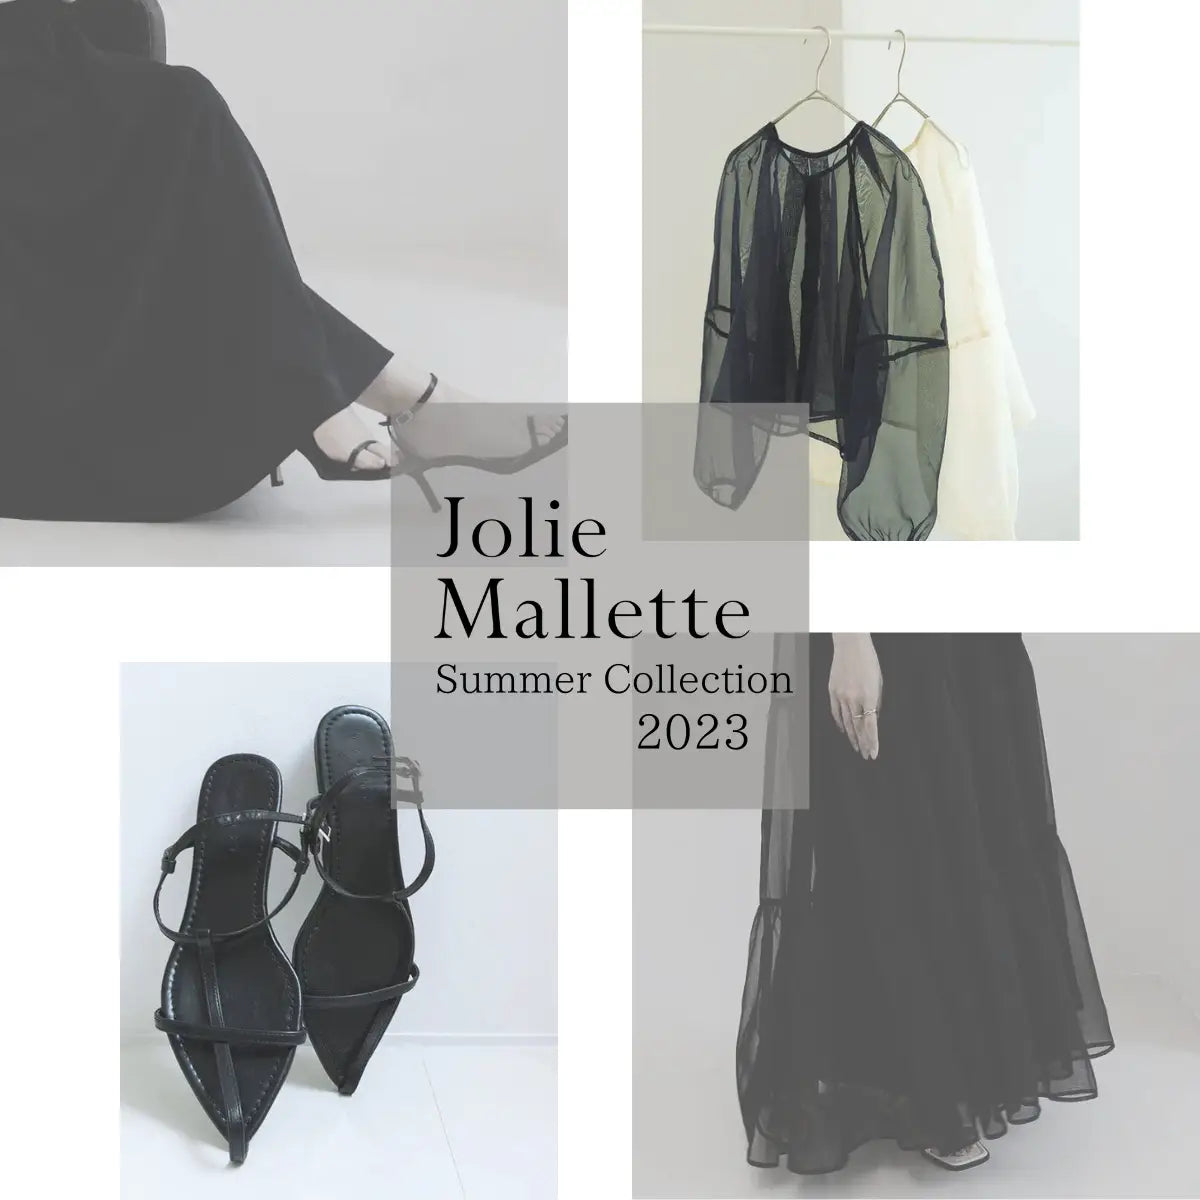 Jolie Mallette - いつでも、いつまでも 自分が着たい服を |ジョリー 